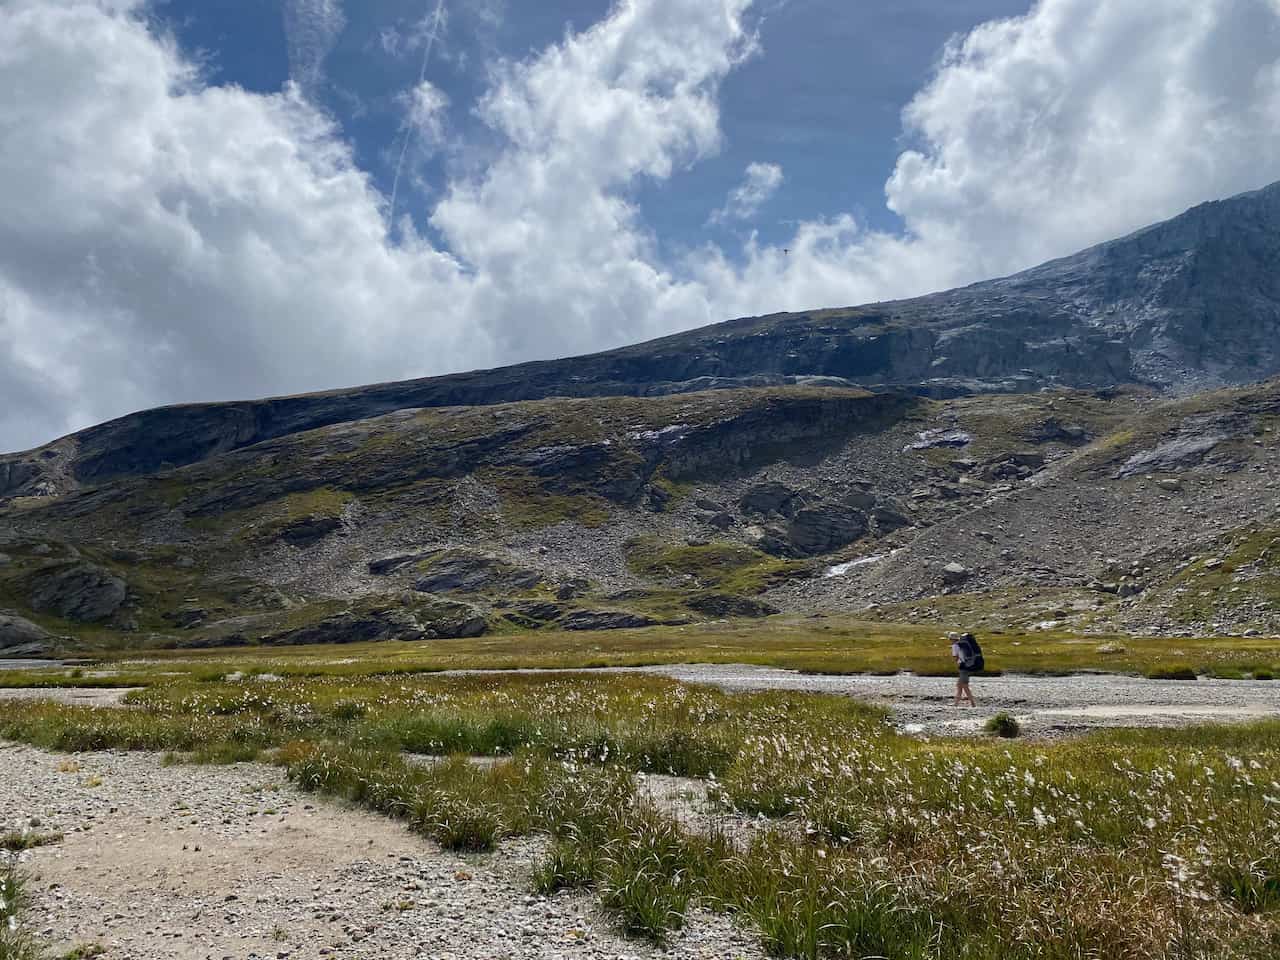 Mensch barfuss unterwegs in unberührter alpiner Landschaft